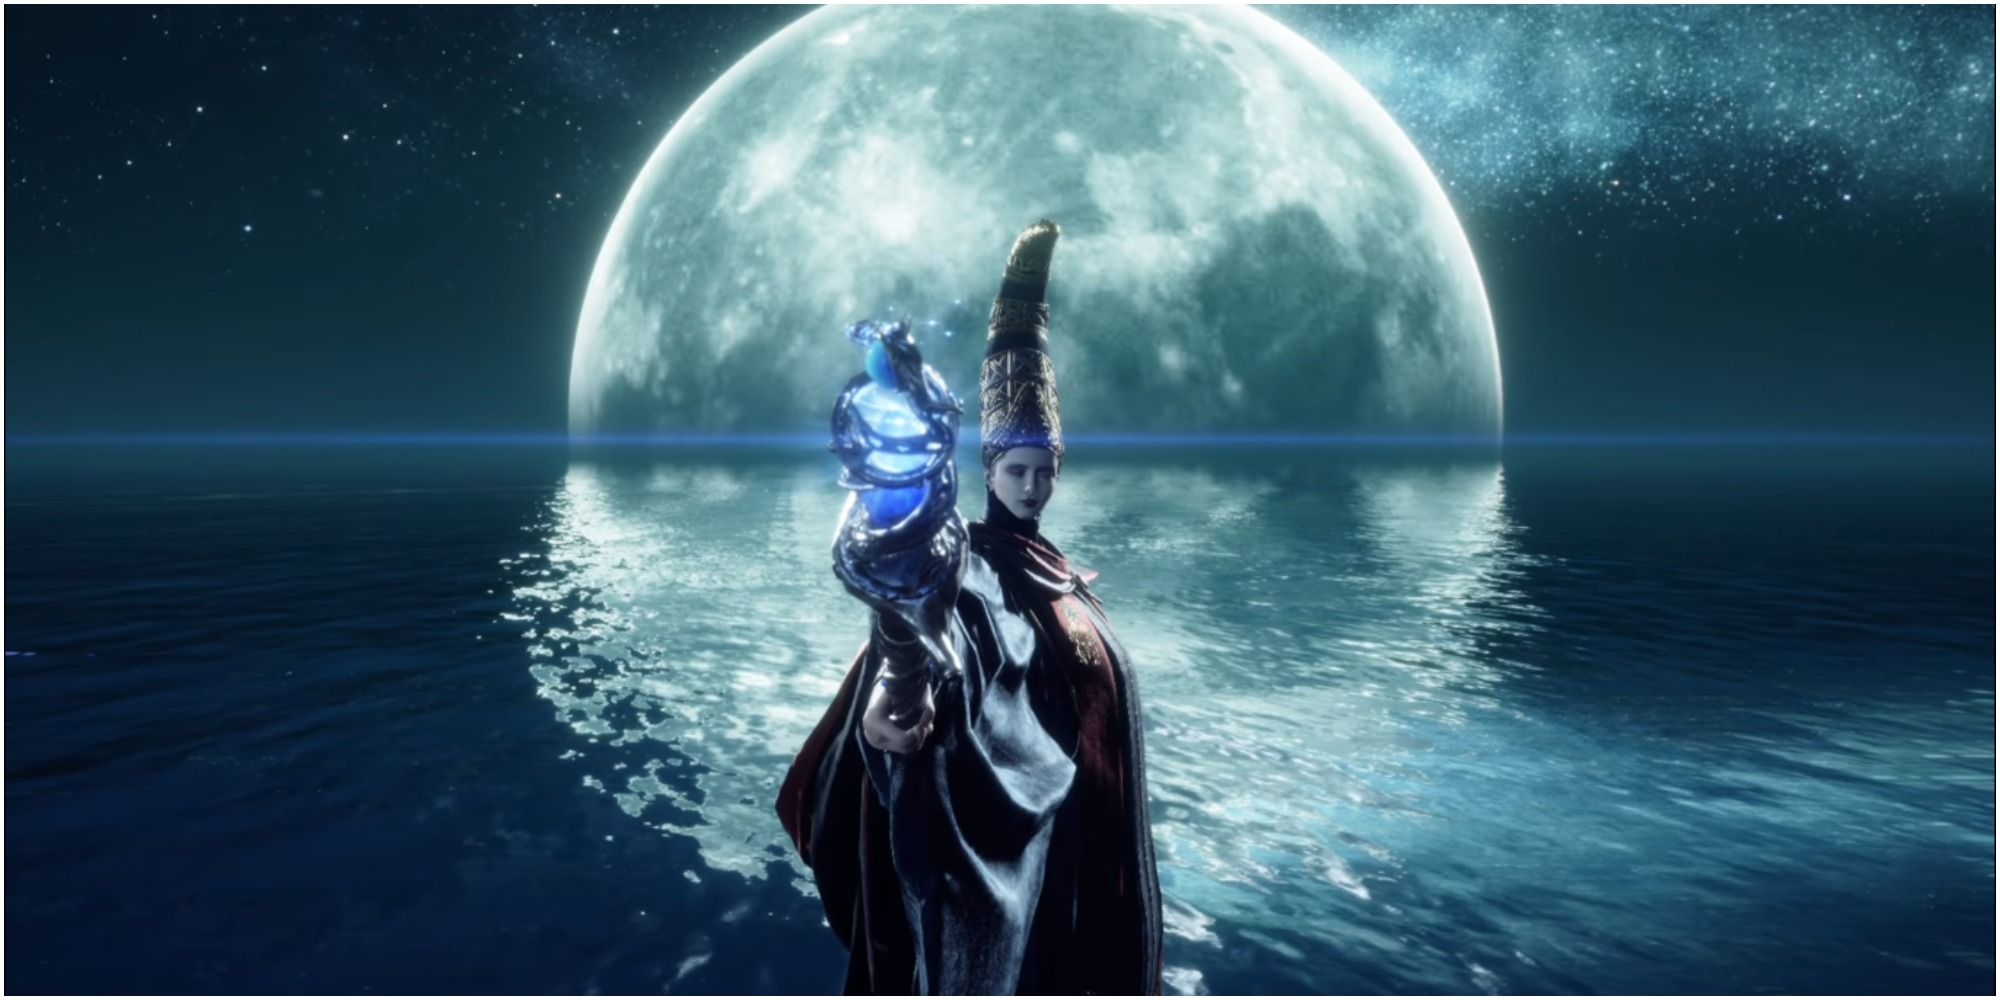 Elden Ring How To Defeat Rennala Queen Of The Full Moon